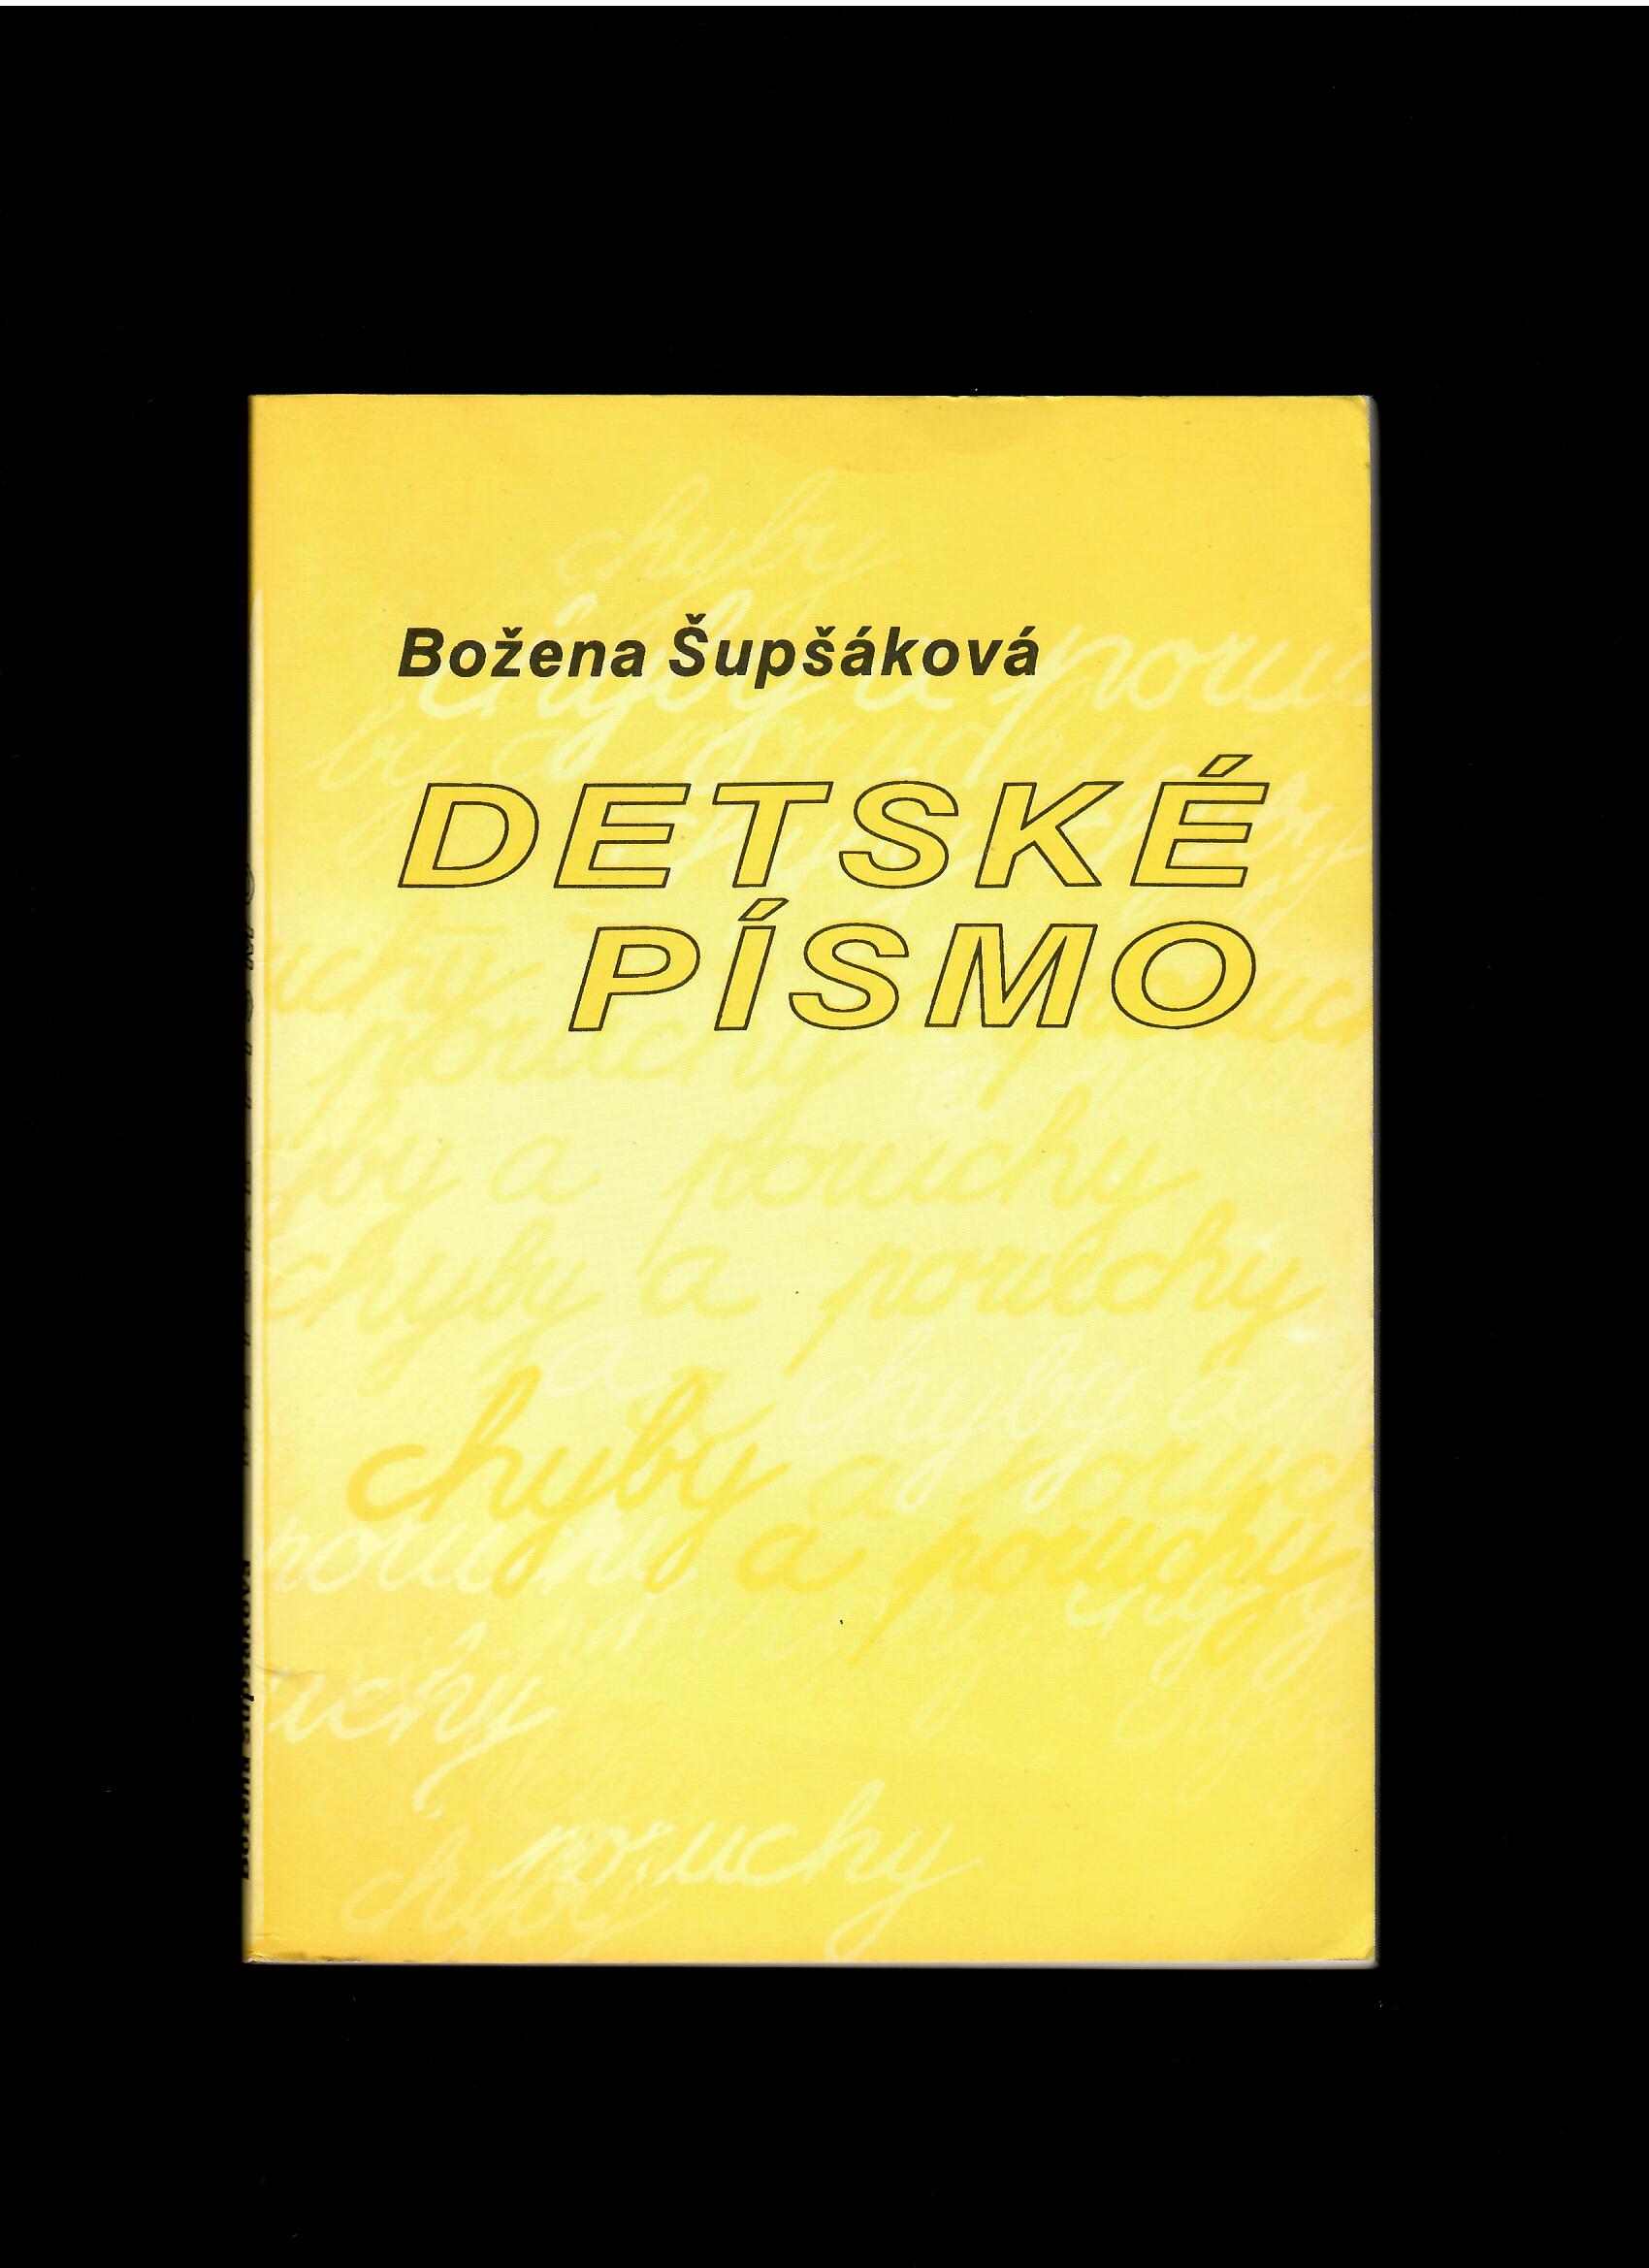 Božena Šupšáková: Detské písmo. Chyby a poruchy